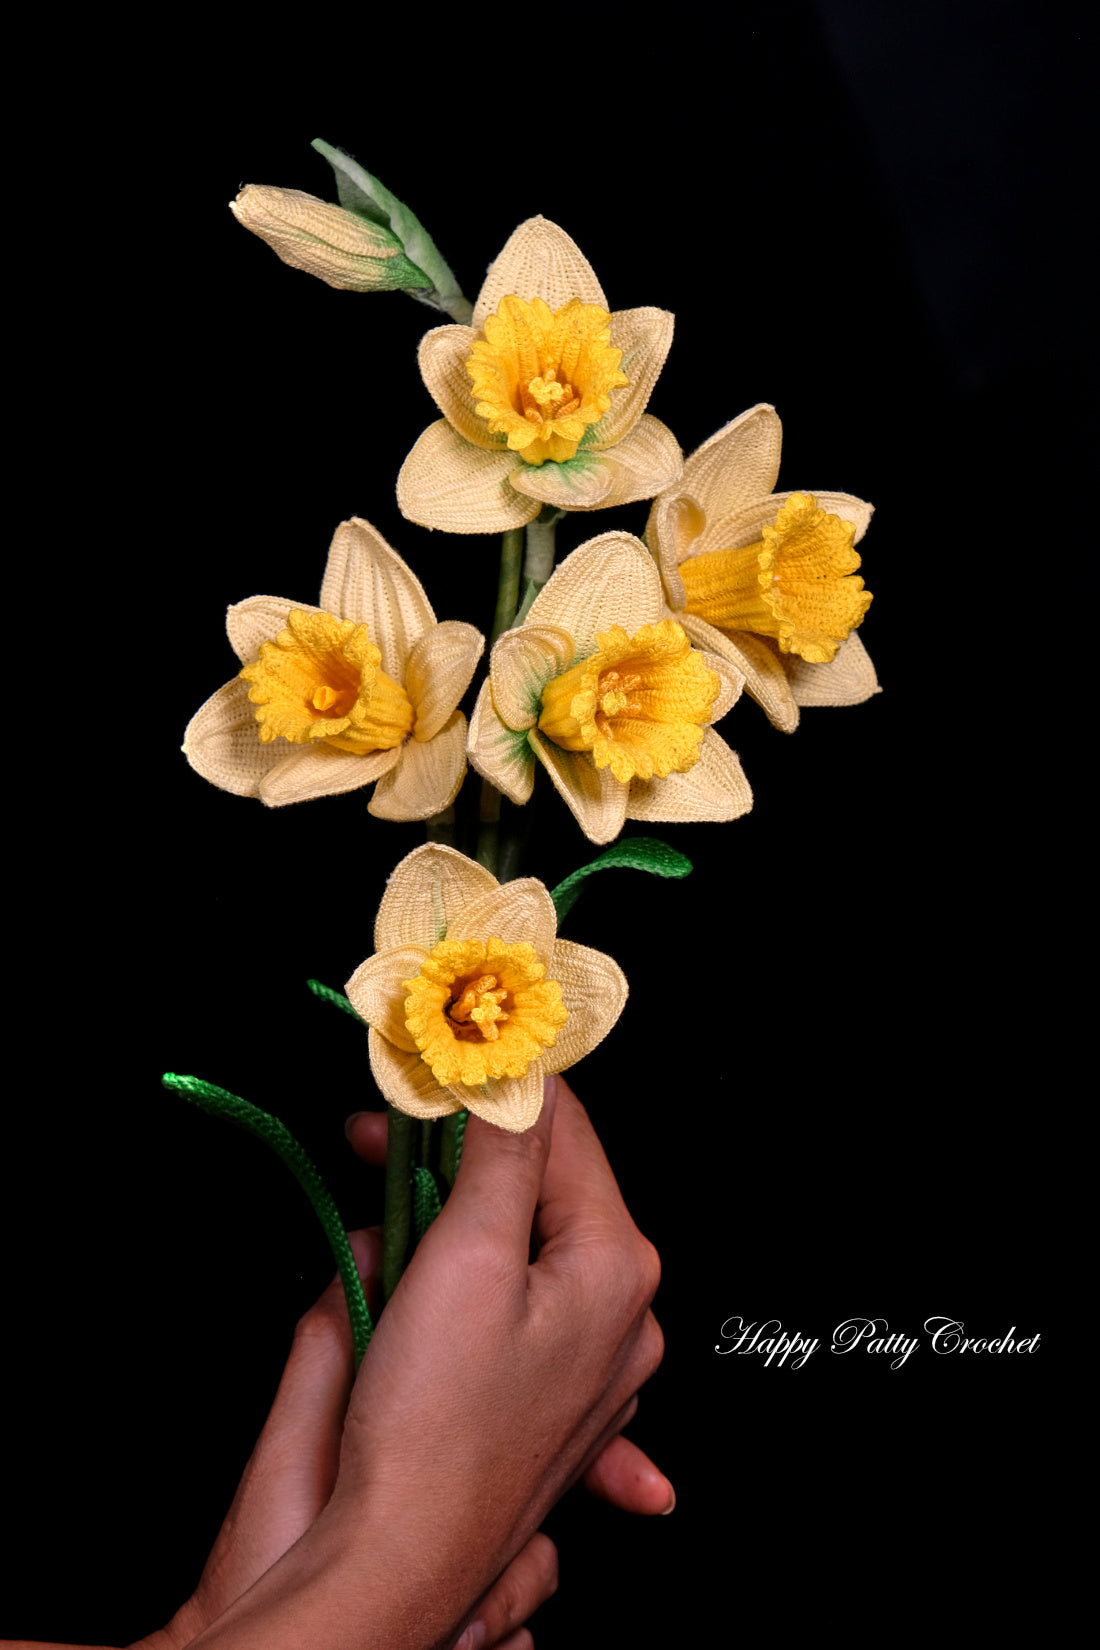 Trumpet Daffodil